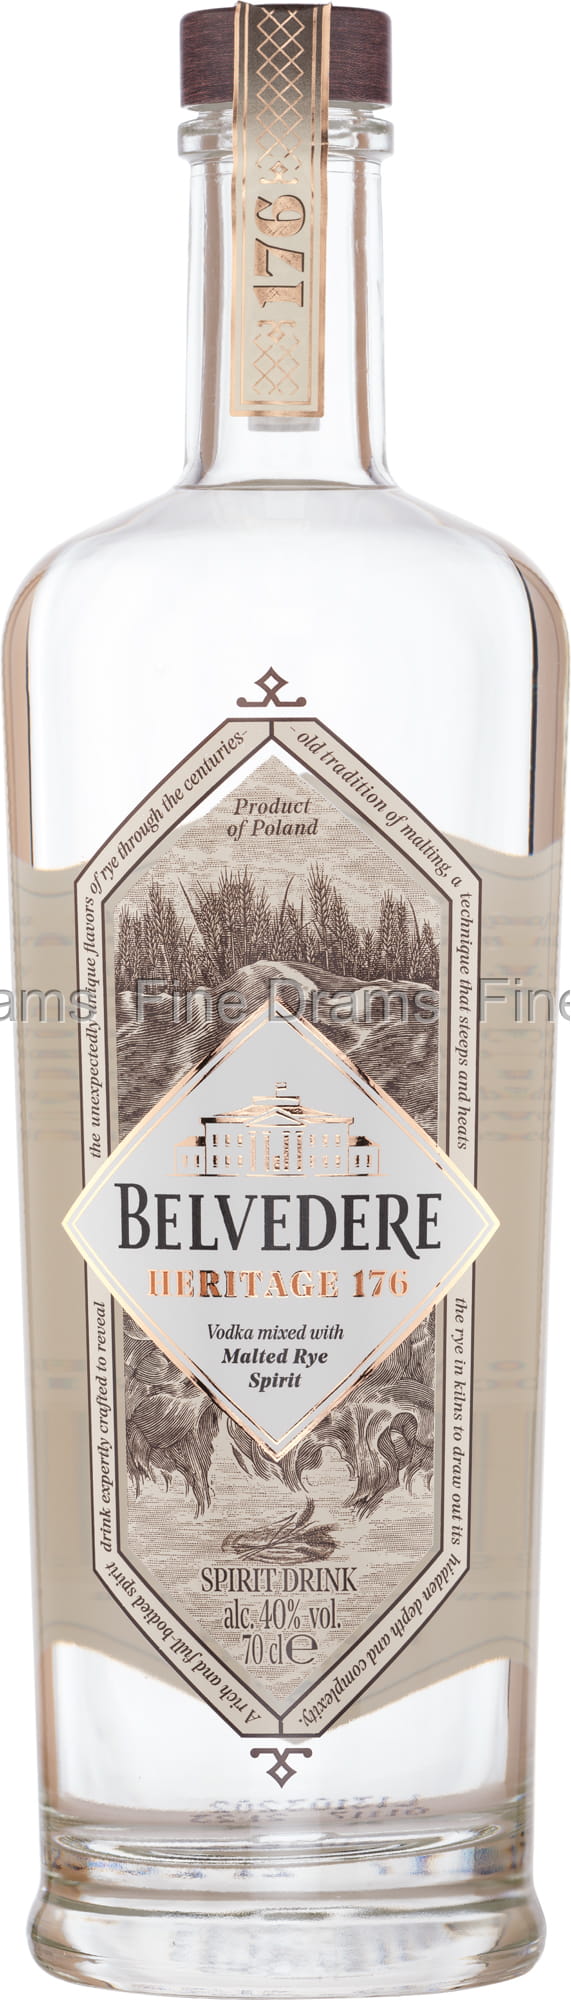 Heritage Vodka Belvedere 176